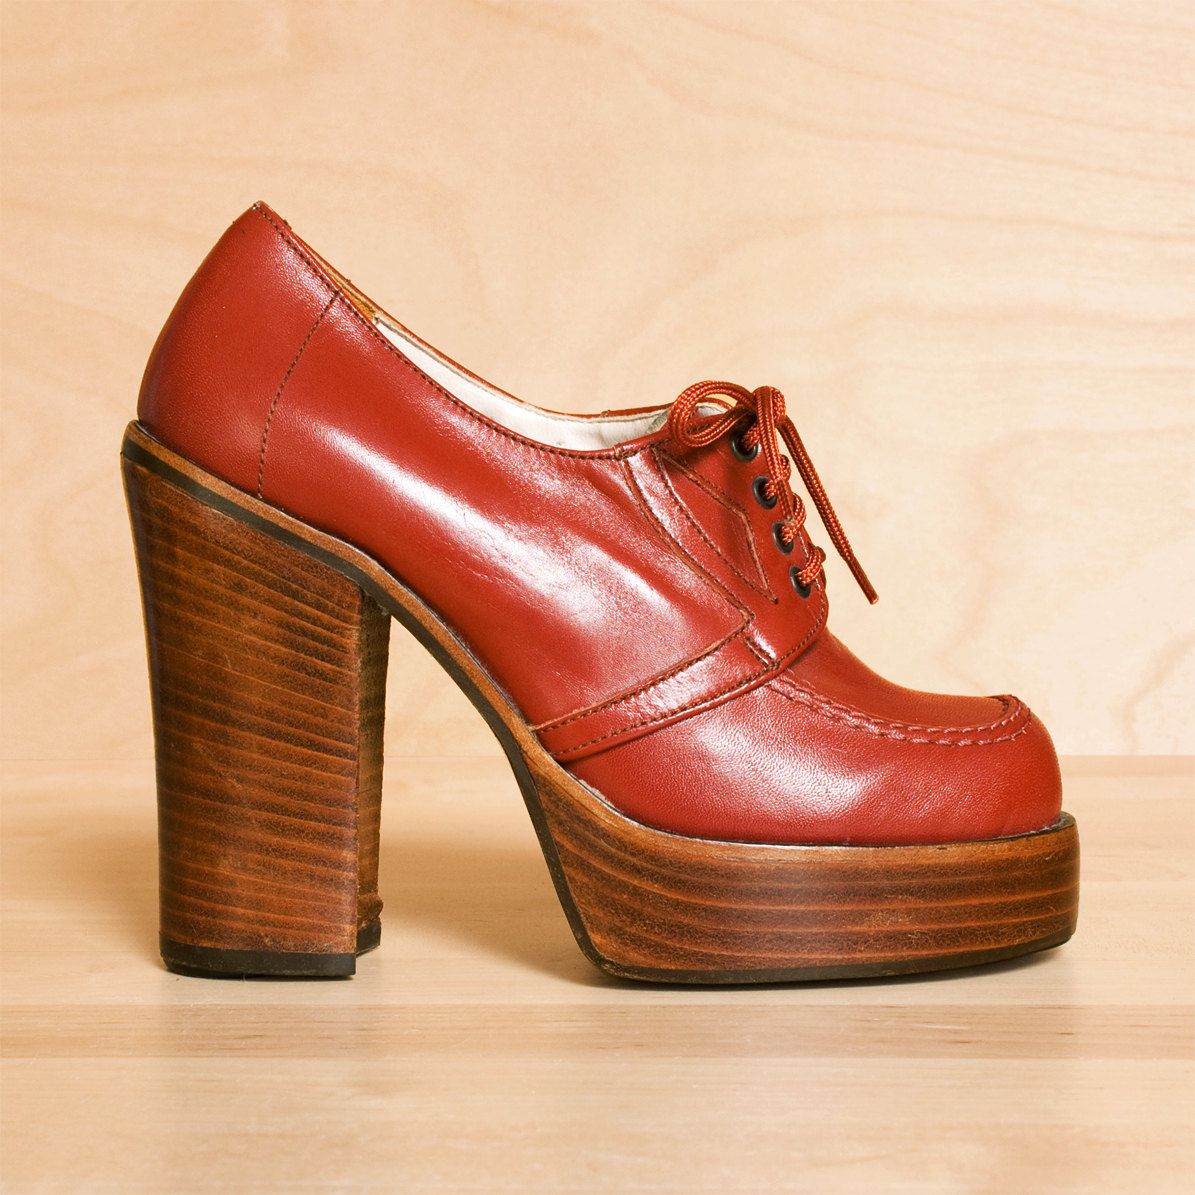 نمونه Platform Shoes رایج در سال 1970 